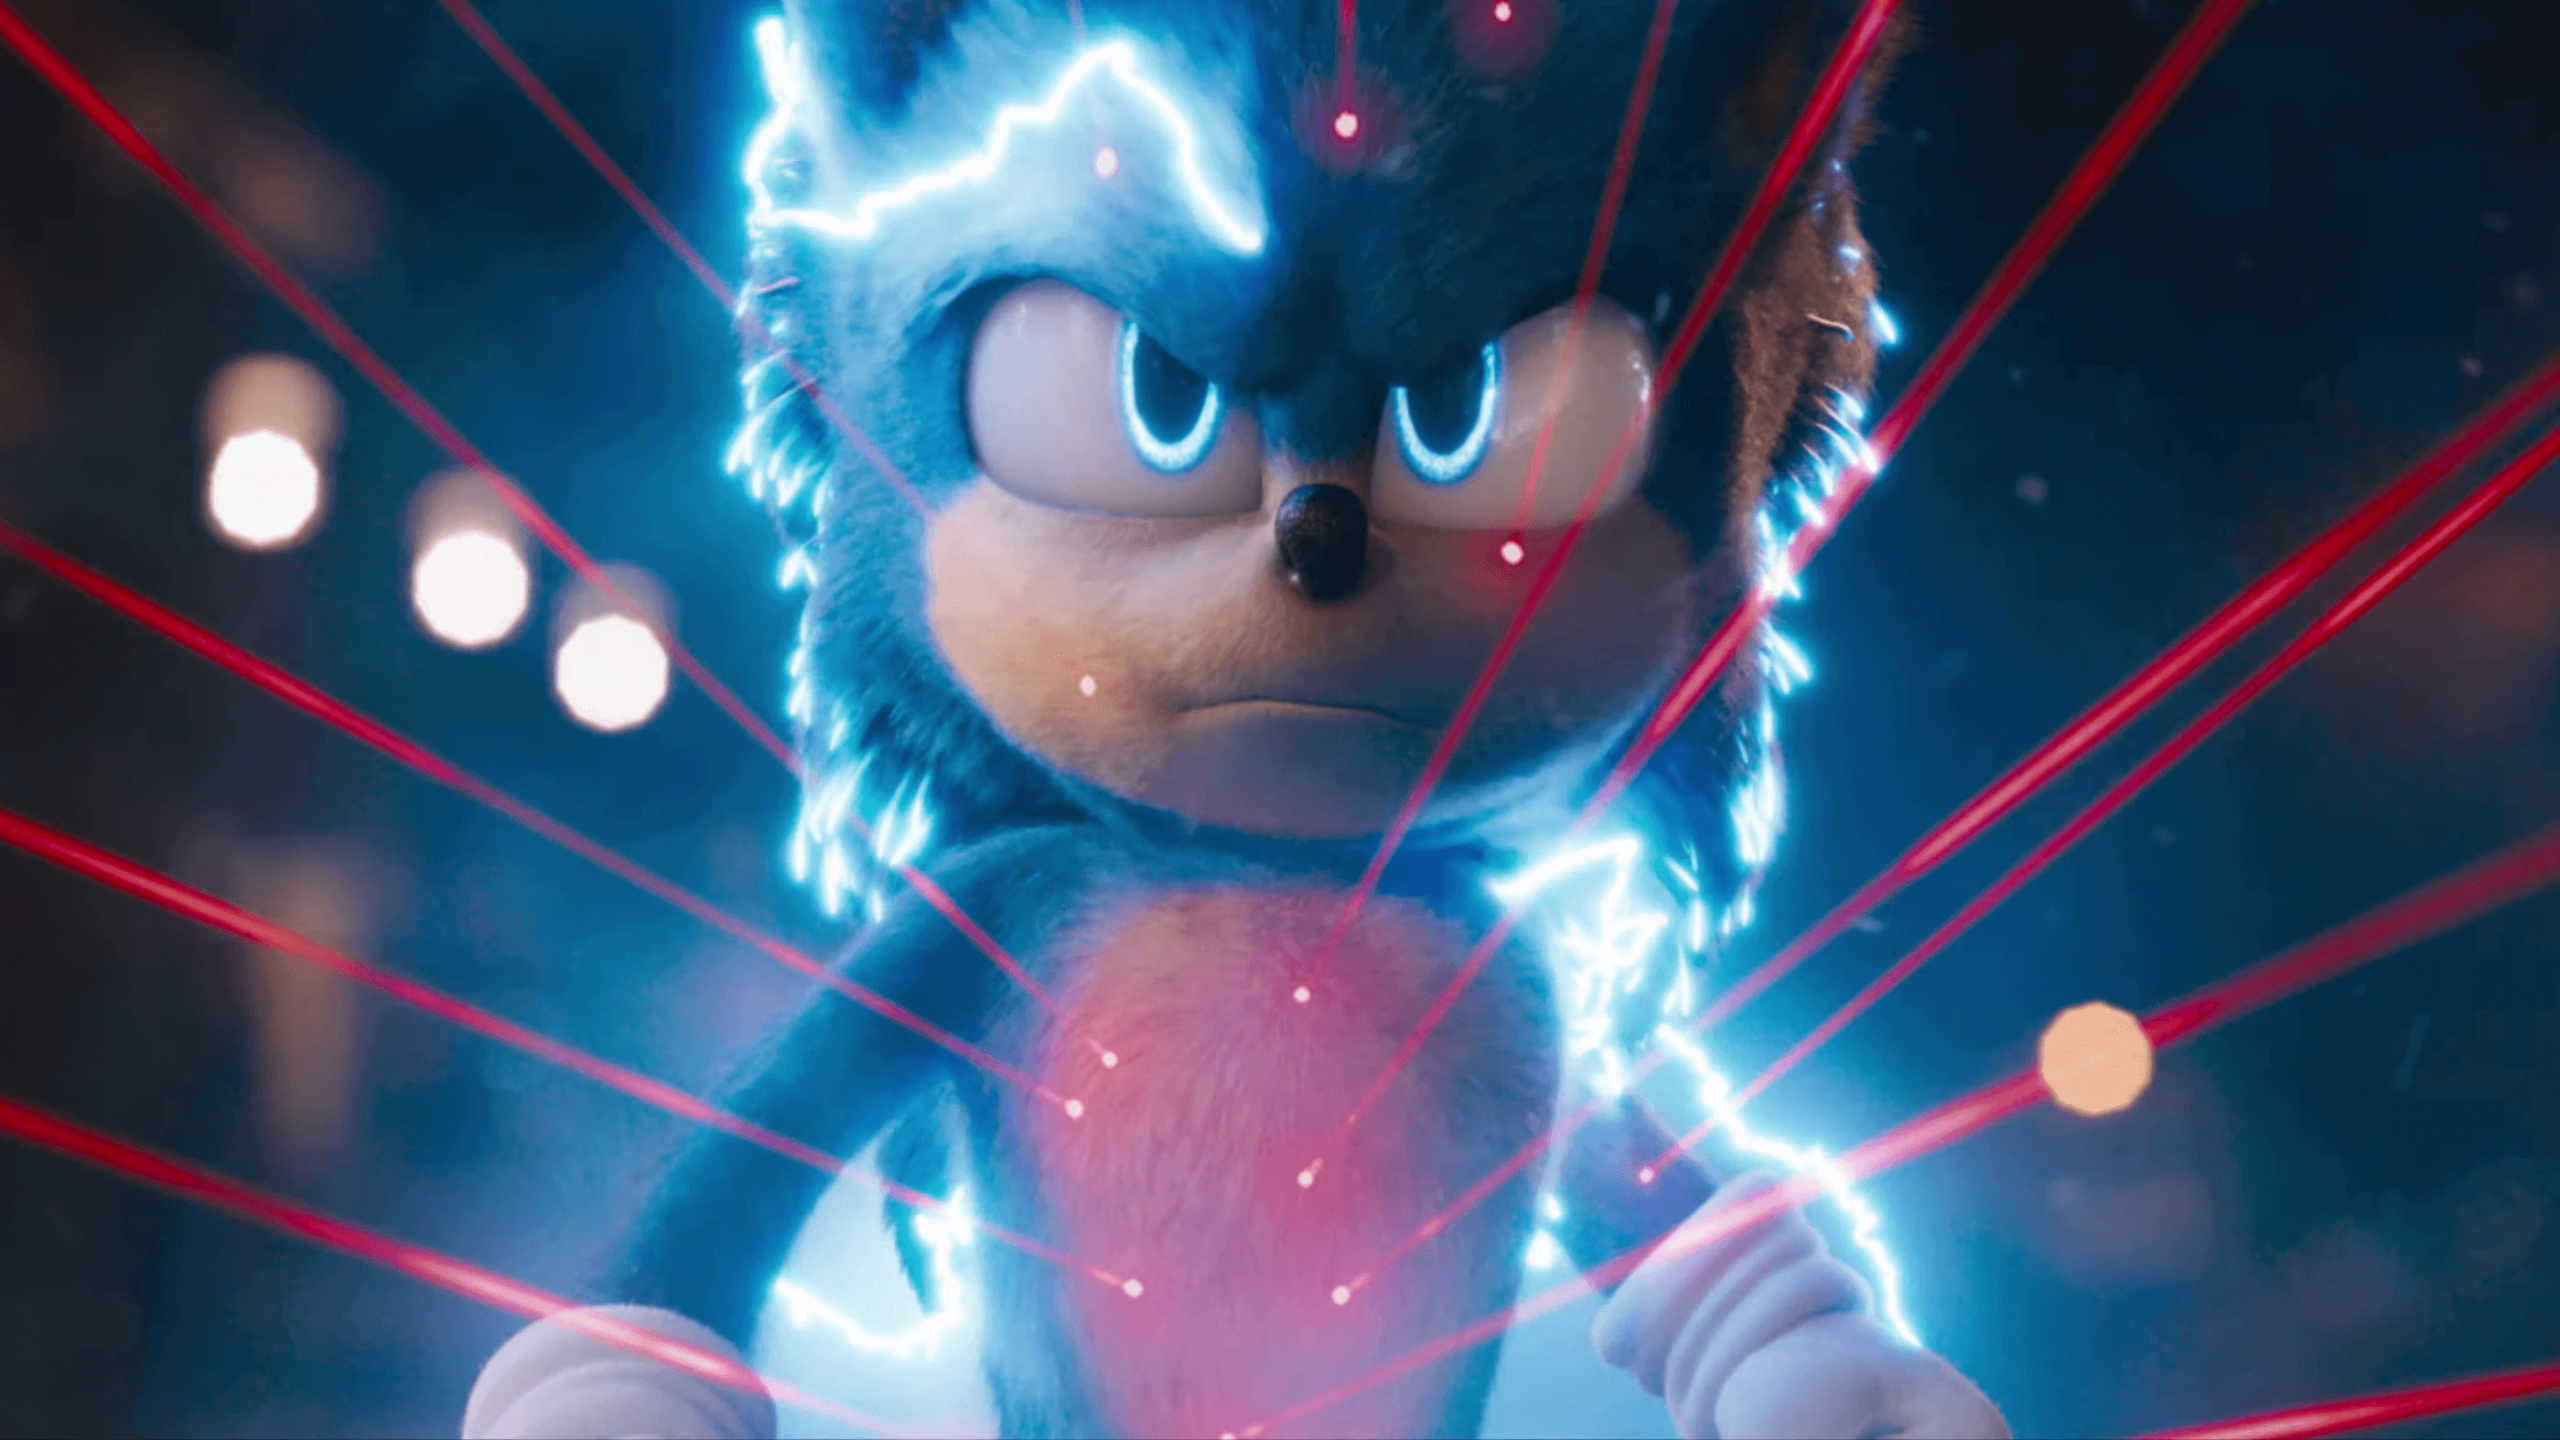 O novo visual Sonic no novo filme foi muito elogiado pelos fãs depois de ter o seu primeiro design reprovado pelos aficionados do ouriço.